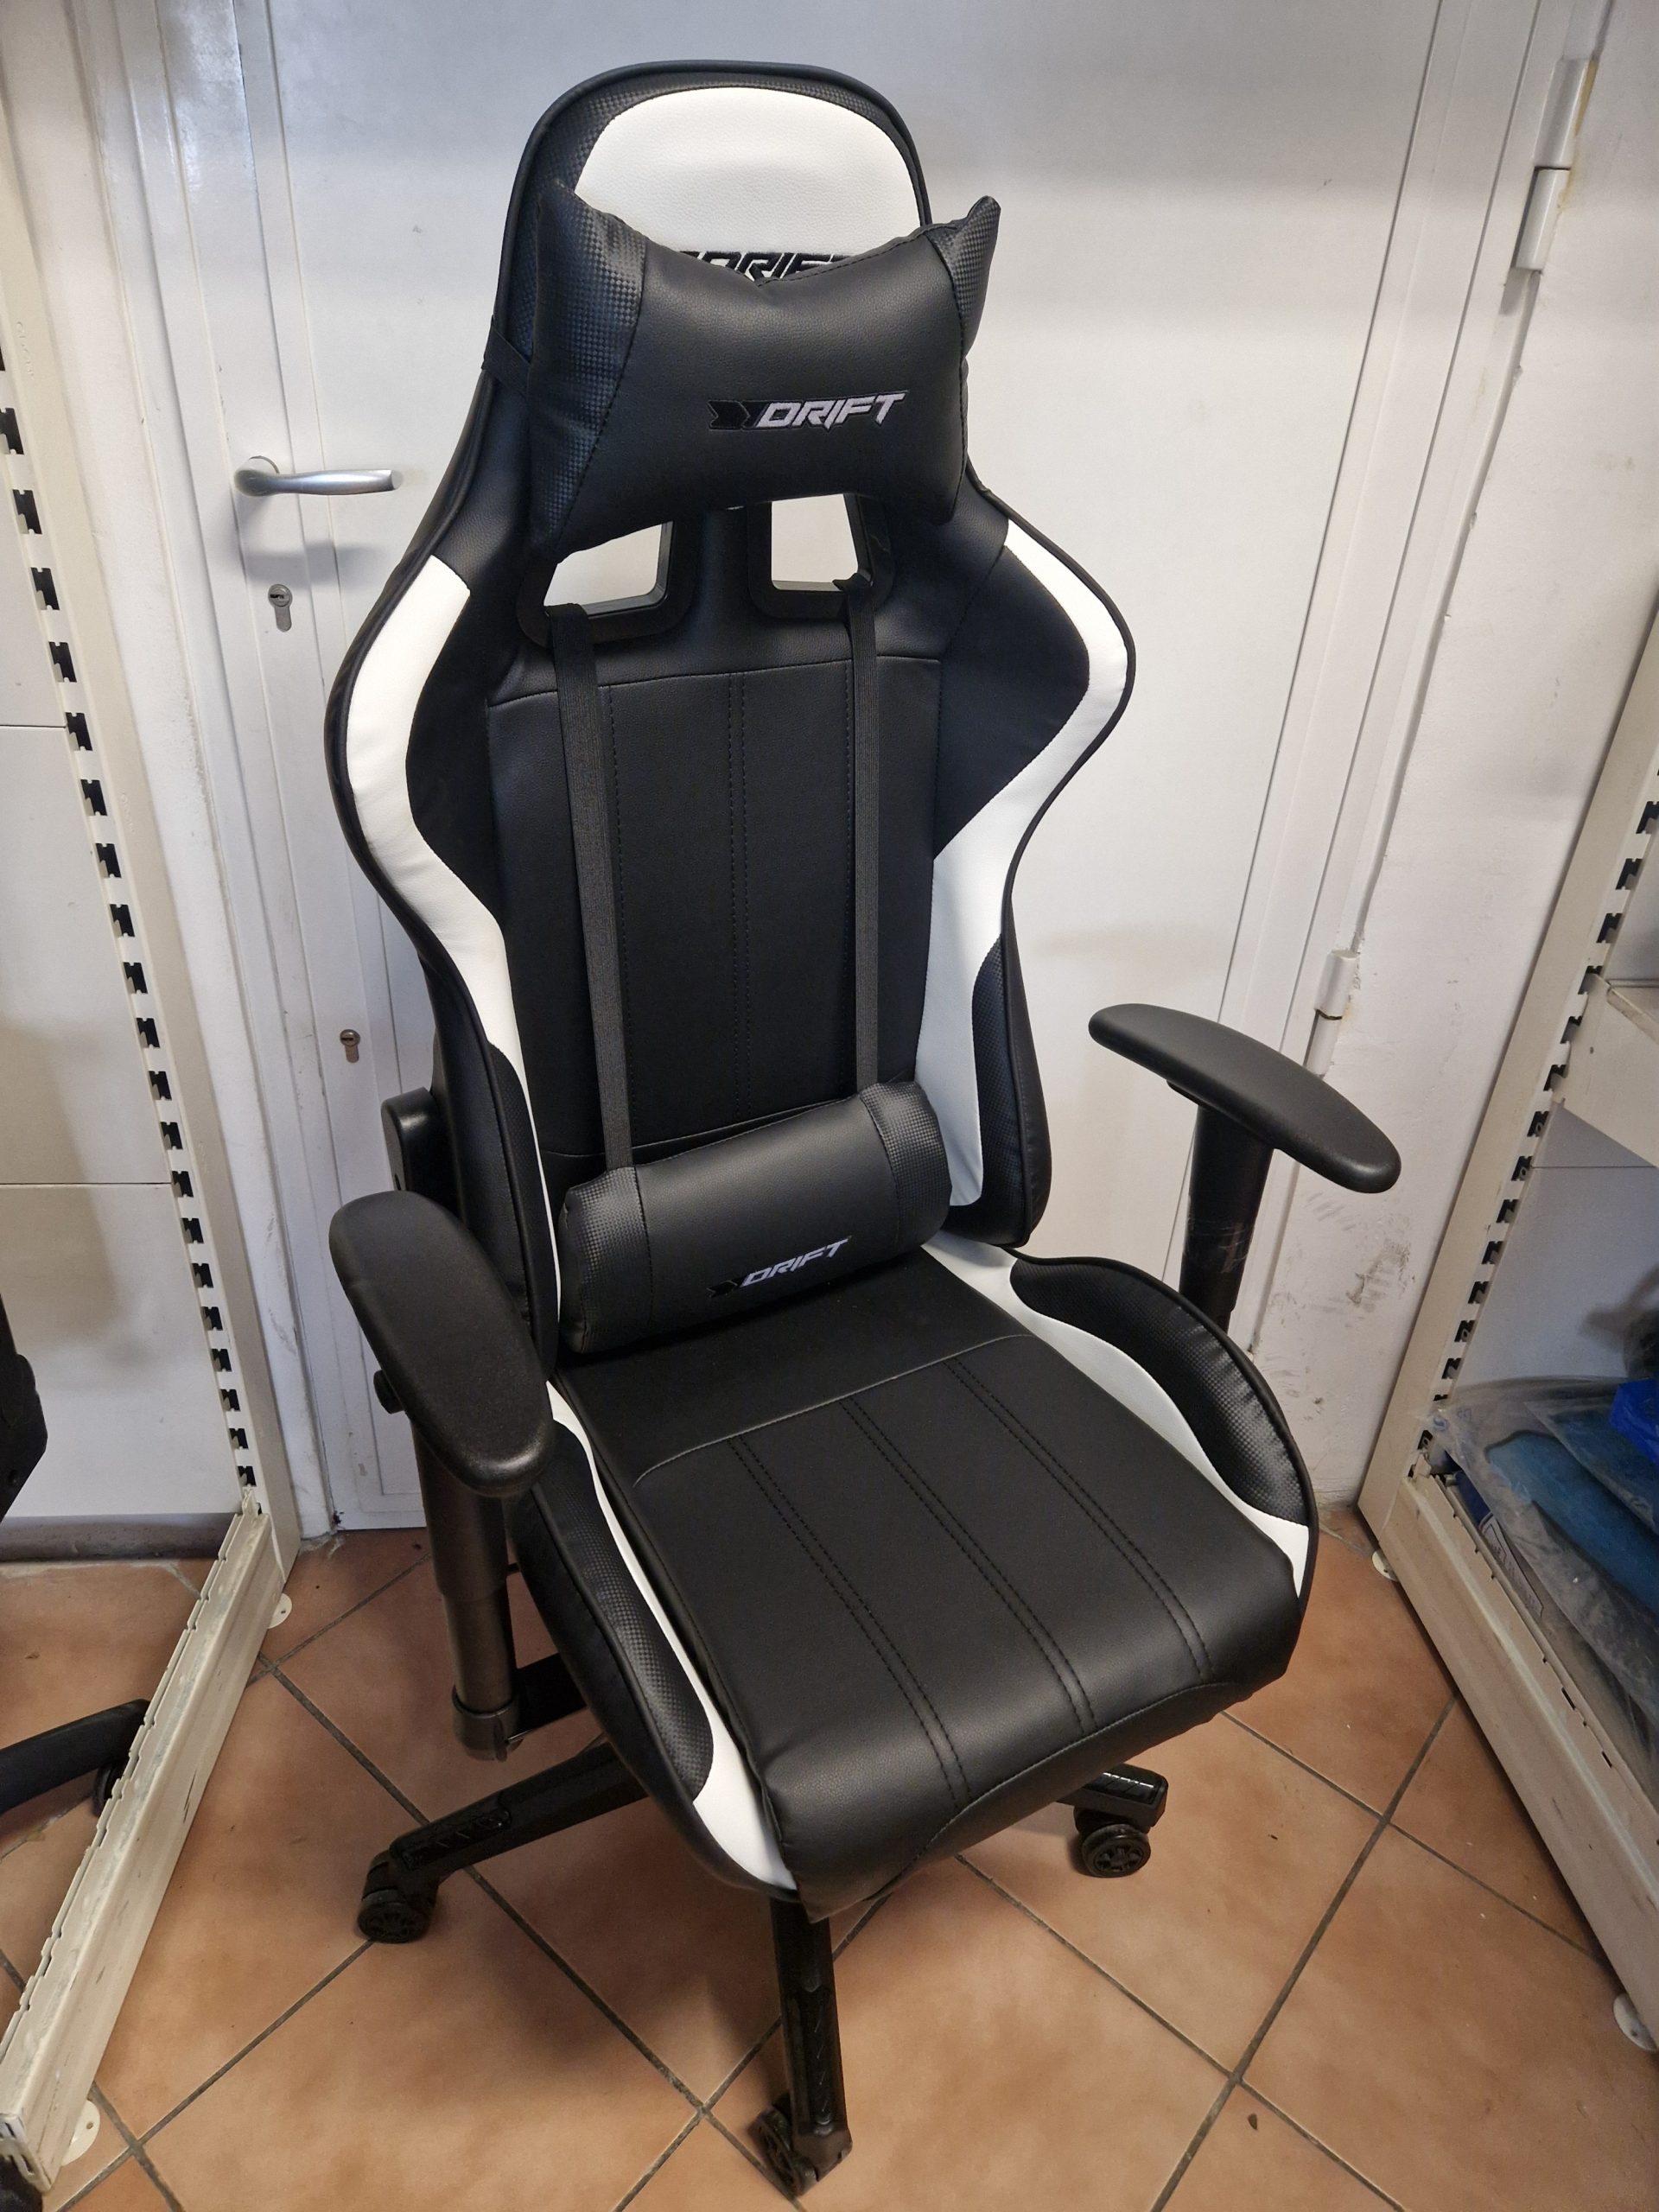 ÚJ DRIFT fekete fehér gamer szék, kiemelt kép